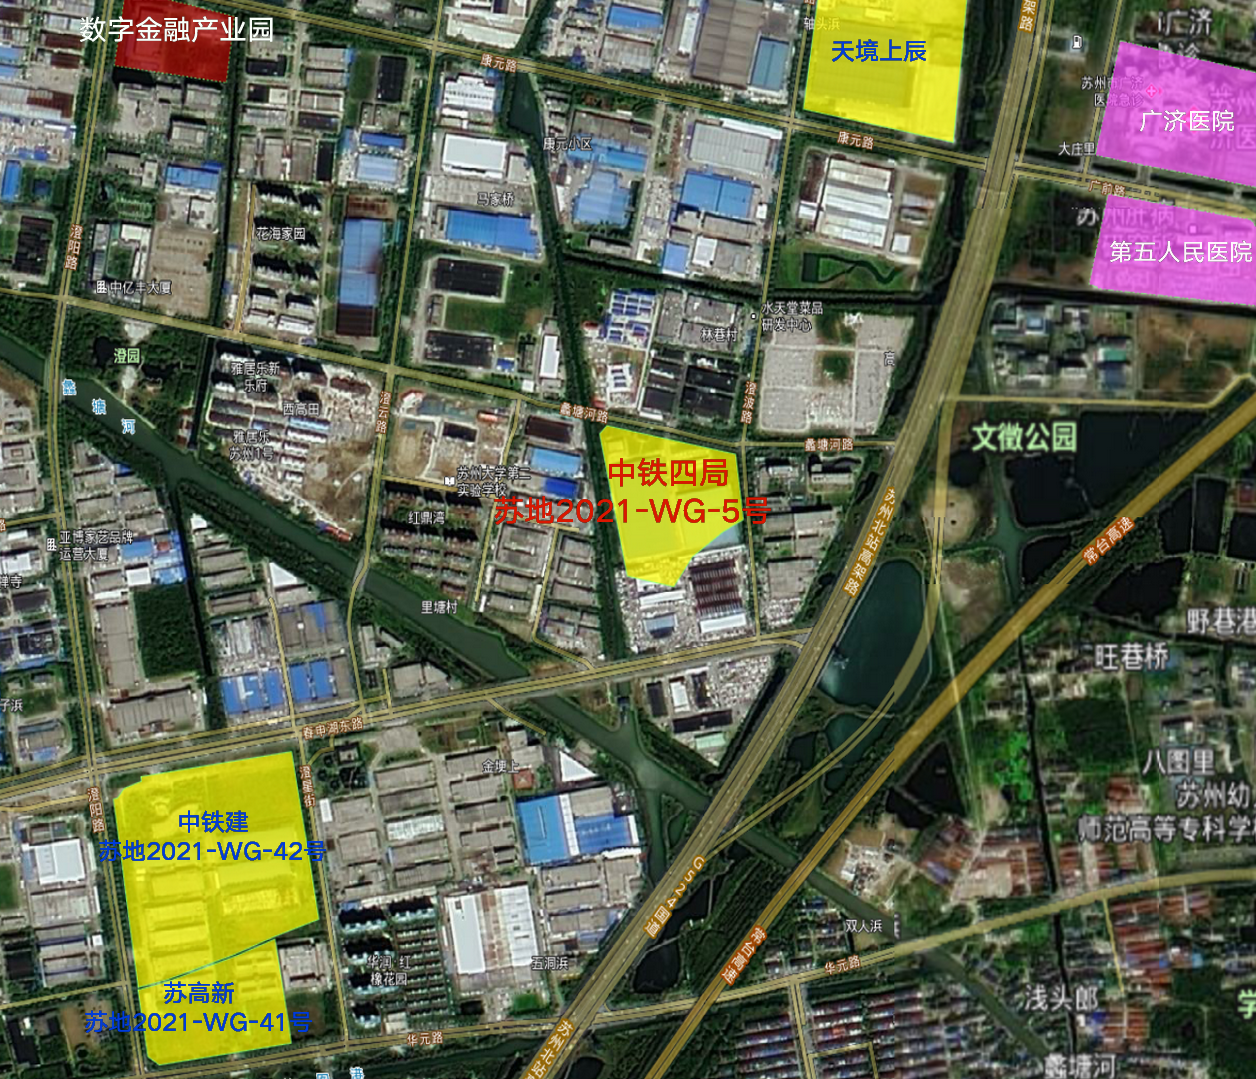 中铁四局苏地2021-WG-5号地块 位置参考示意图